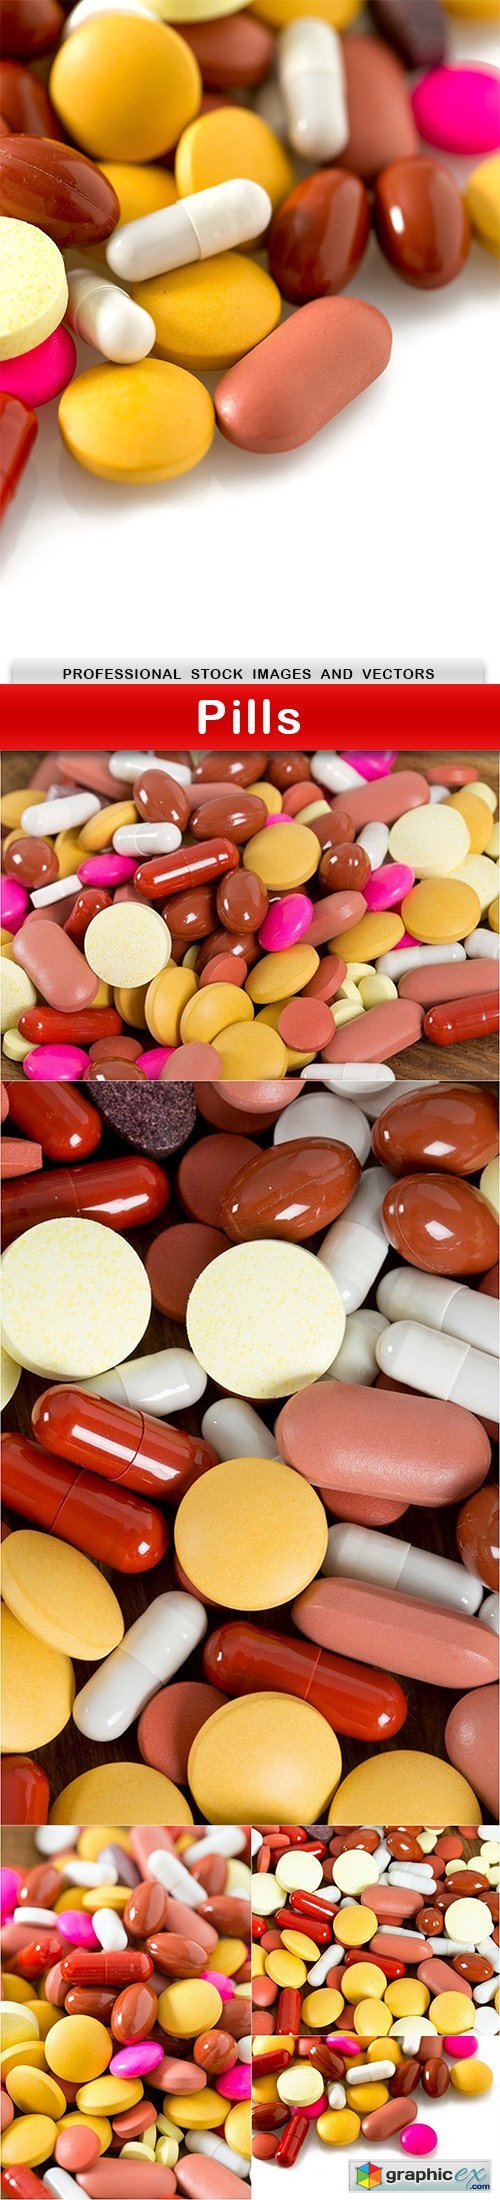 Pills - 6 UHQ JPEG